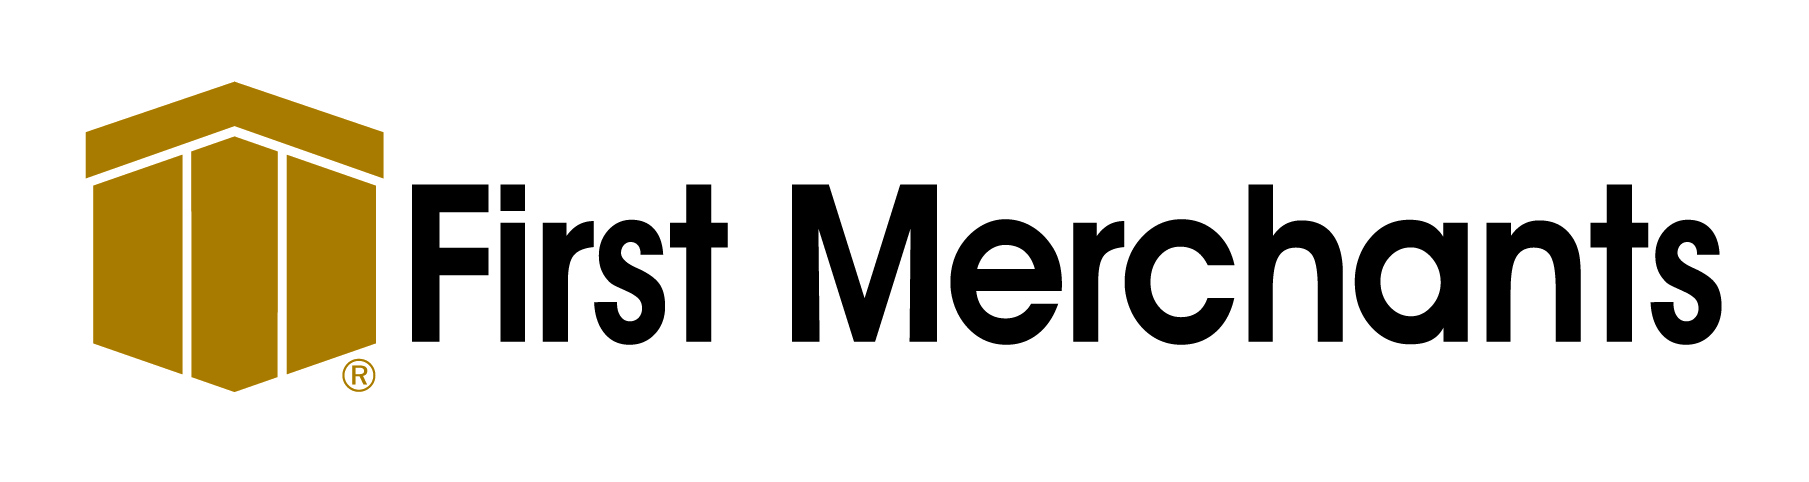 First Merchants logo